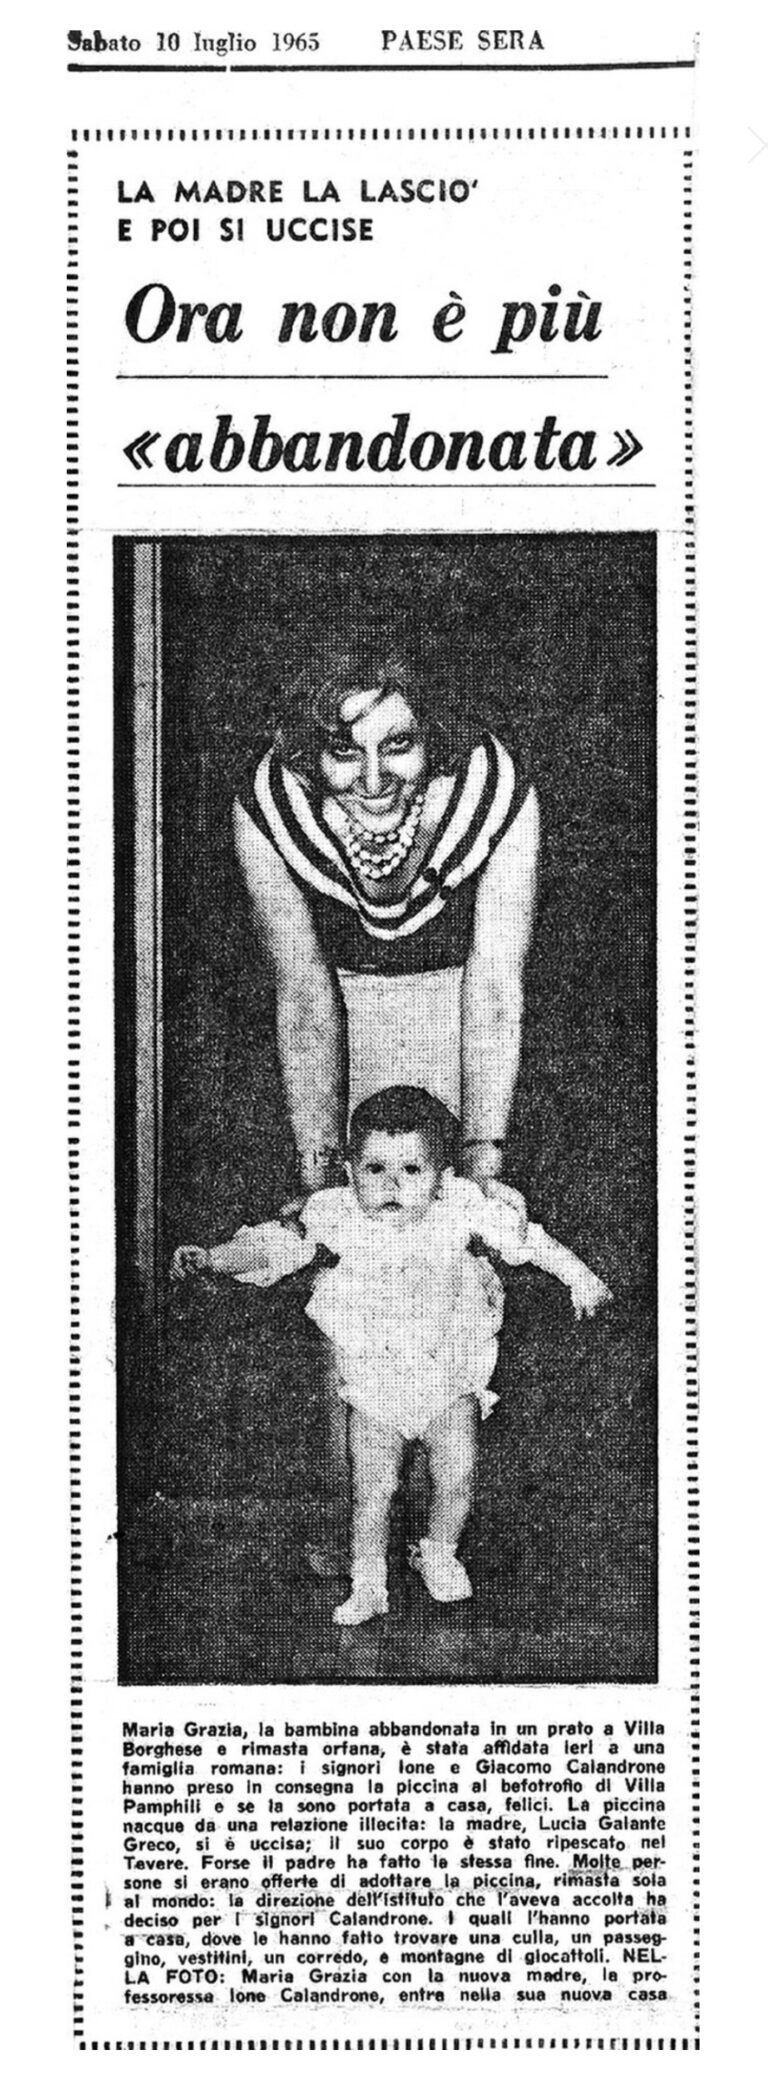 Un articolo su Paese Sera del 10 luglio 1965 racconta dell'adozione di Maria Grazia Calandrone, dopo il suicidio dei genitori